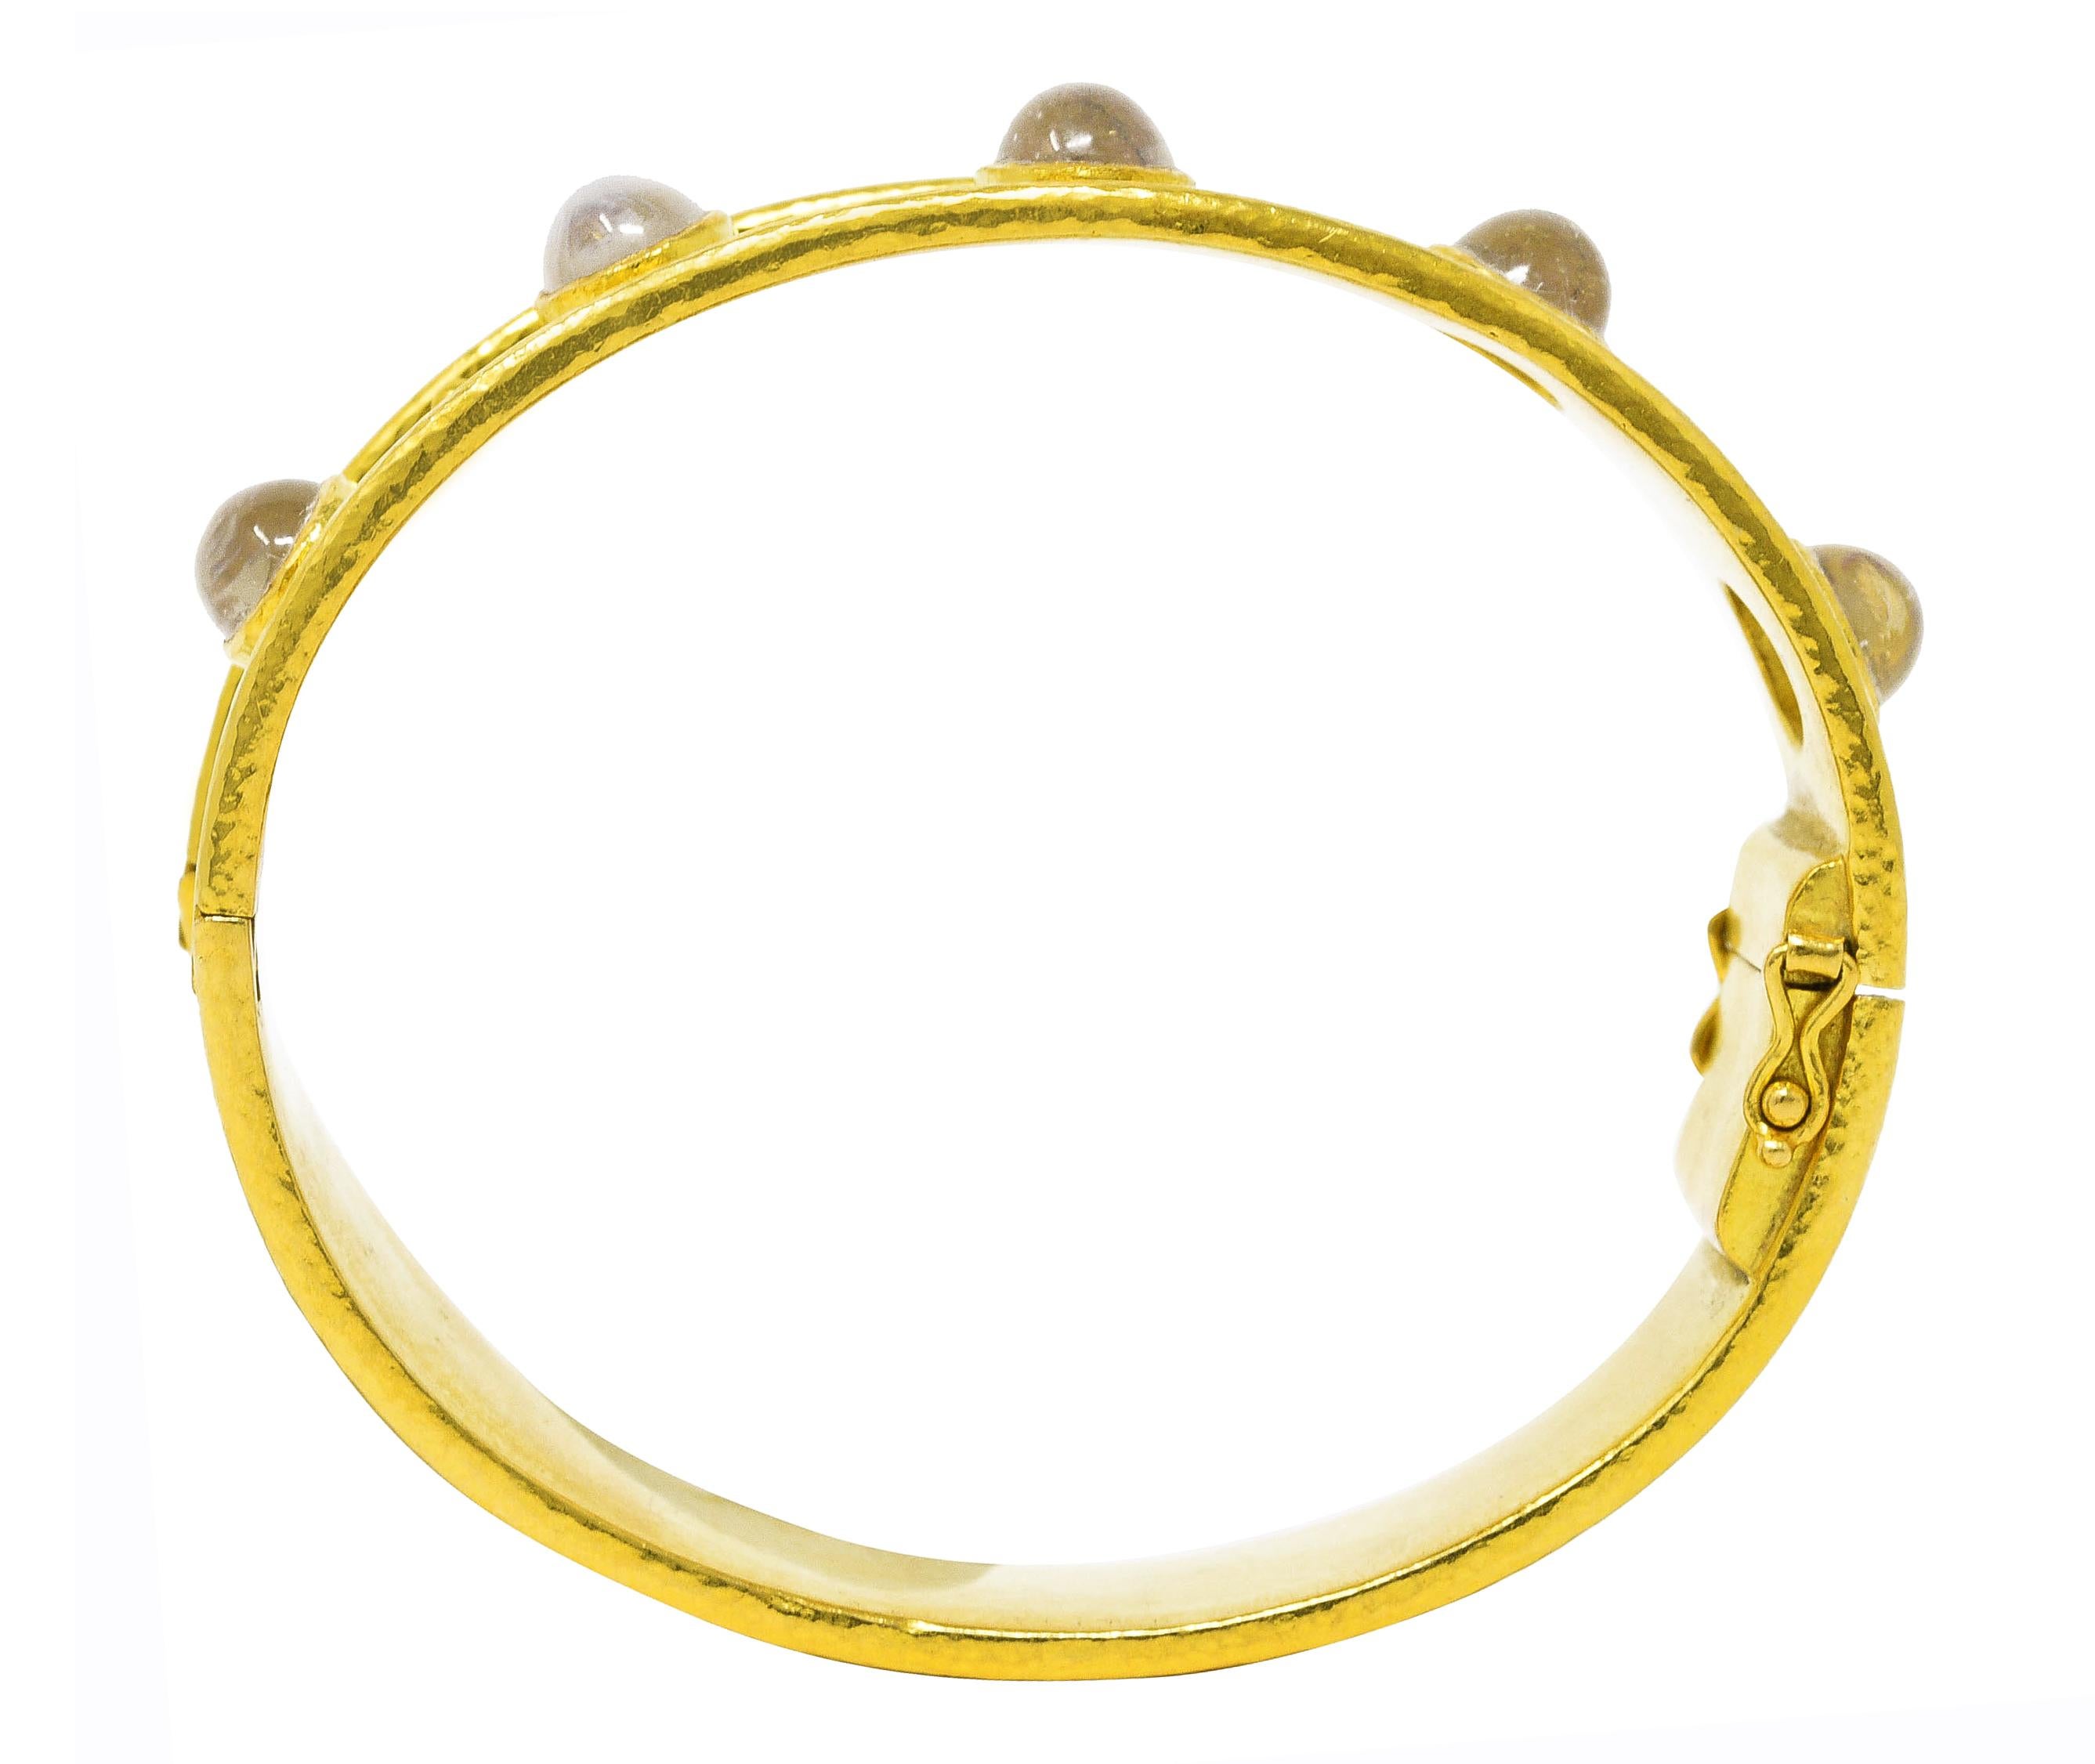 Elizabeth Locke Vintage Moonstone 19 Karat Yellow Gold Hammered Bangle Bracelet For Sale 2